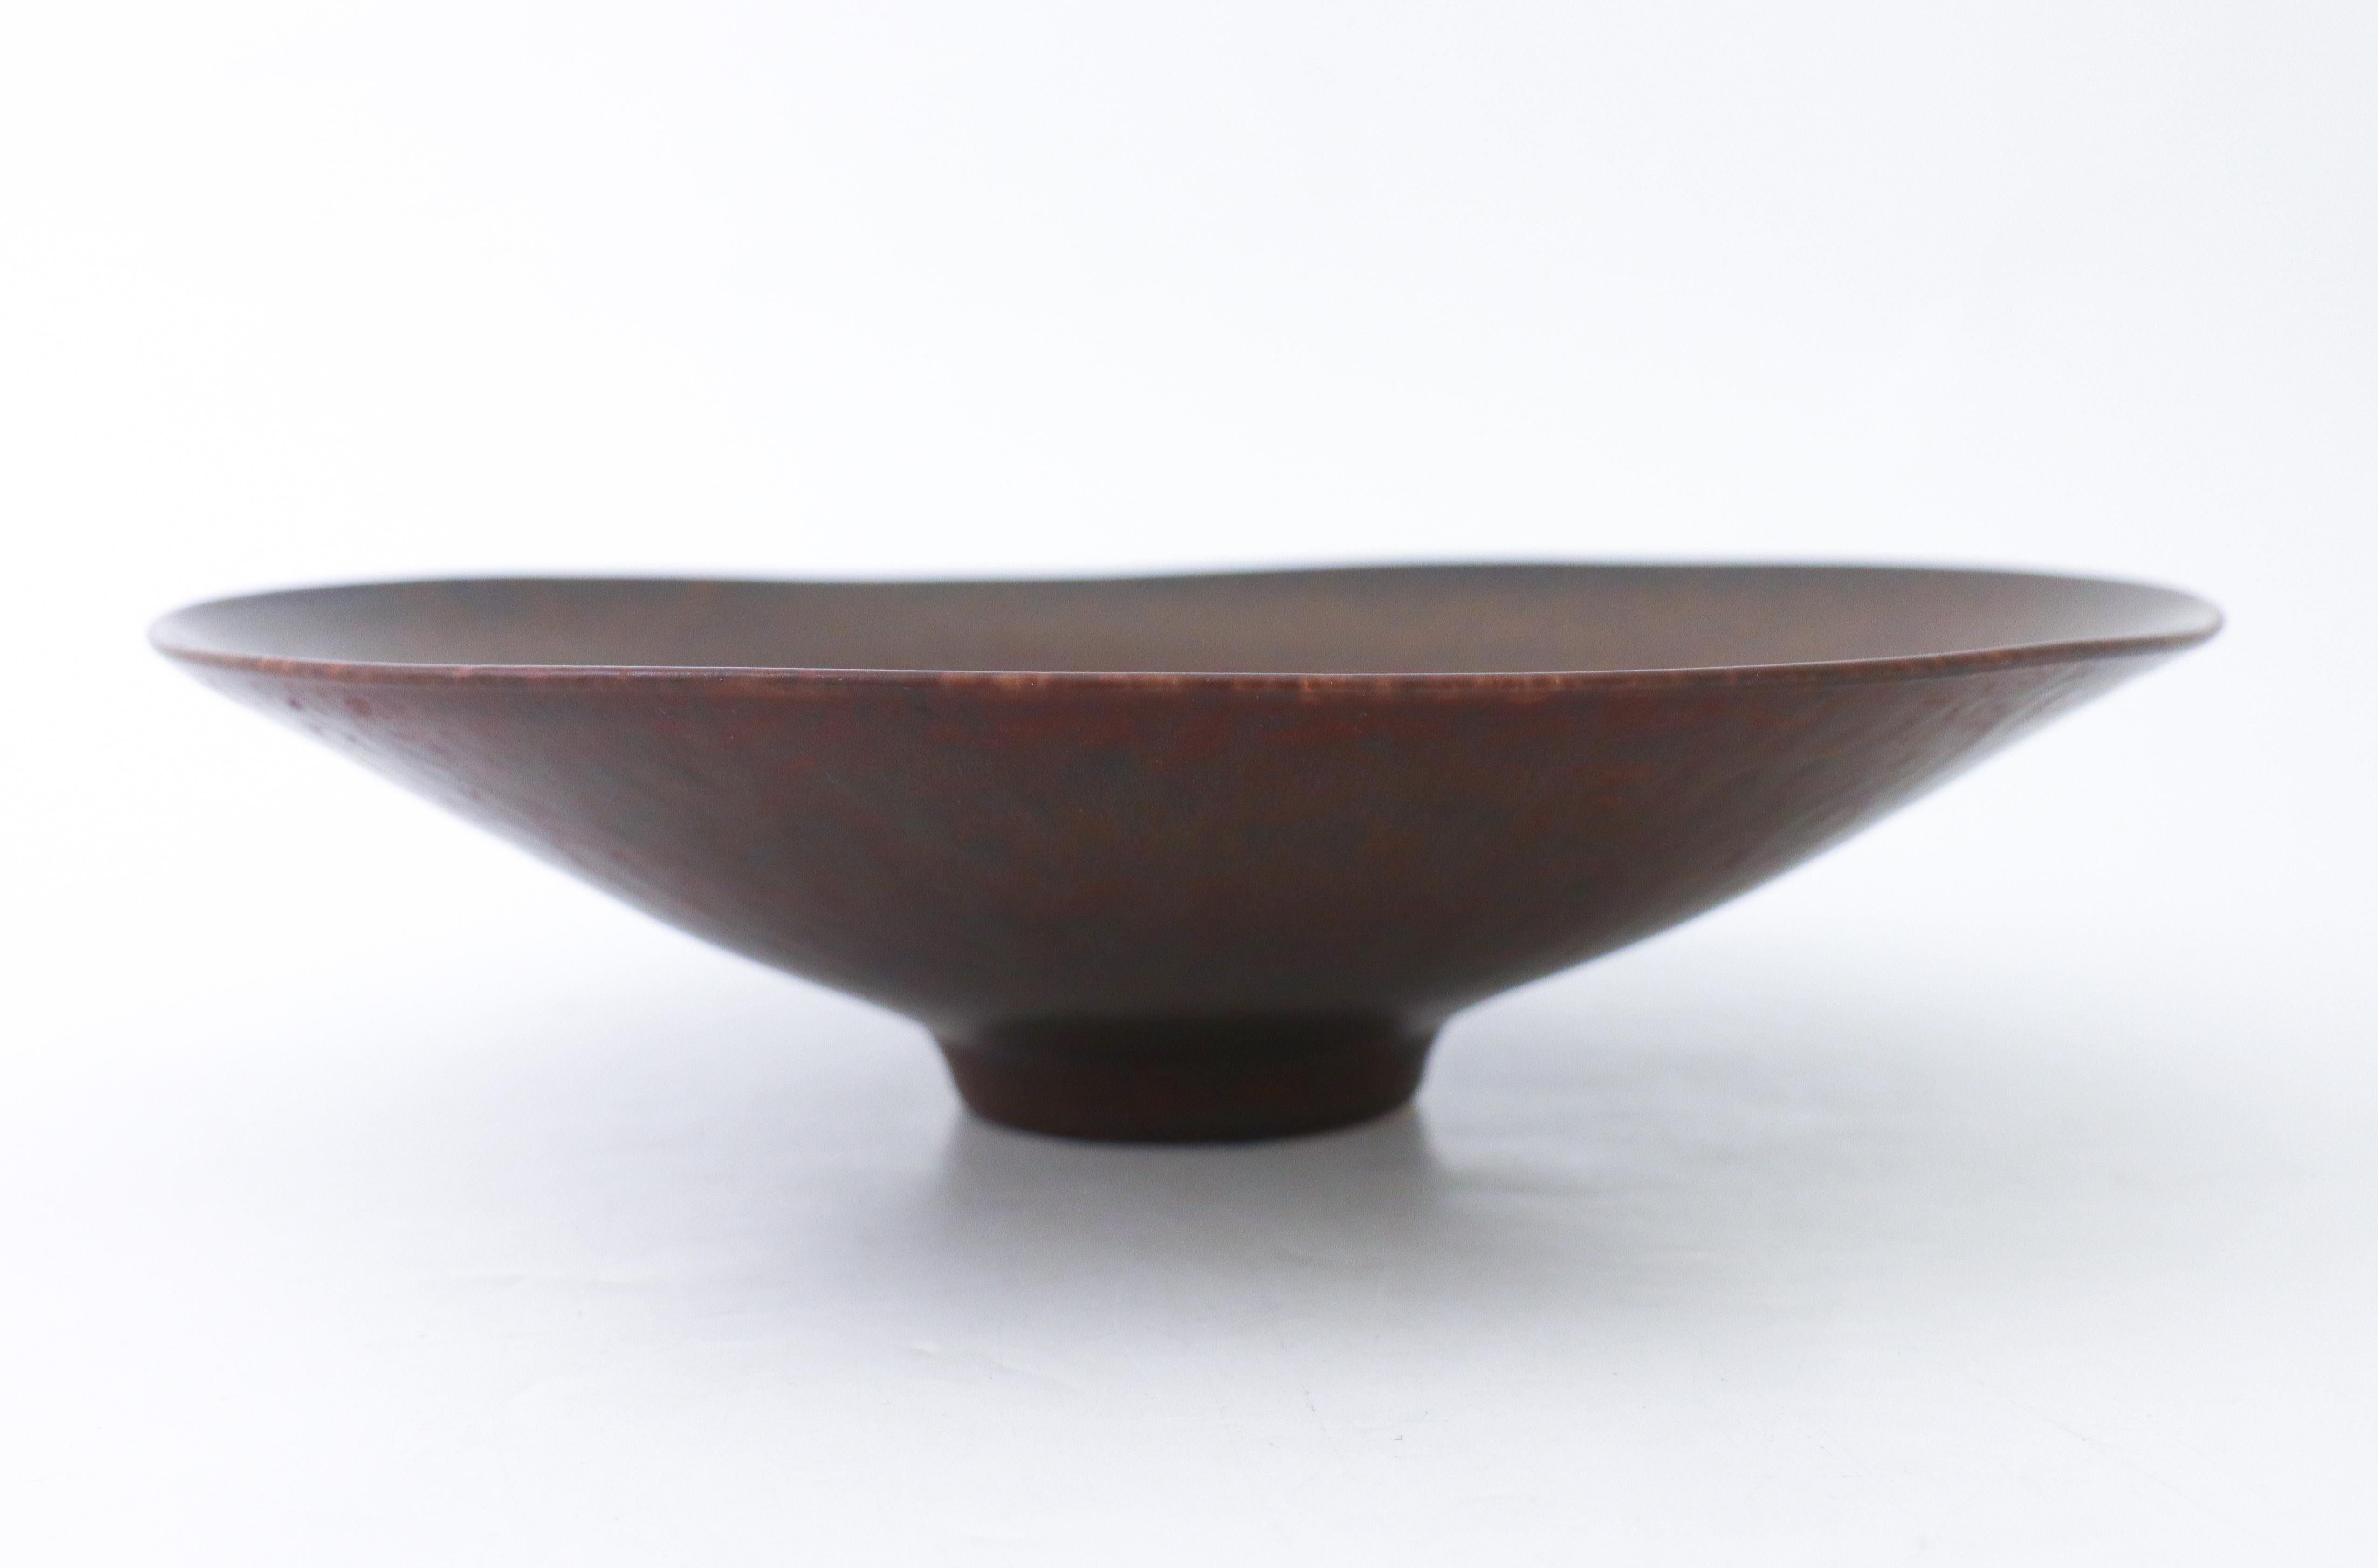 Eine runde Keramikschüssel, entworfen von Carl-Harry Stålhane in Rörstrand, mit einer schönen braunen HAR-Pelzglasur. Die Schüssel hat einen Durchmesser von 29 cm und ist 8 cm hoch. Es ist in ausgezeichnetem Zustand und 1. Qualität. 

Carl-Harry